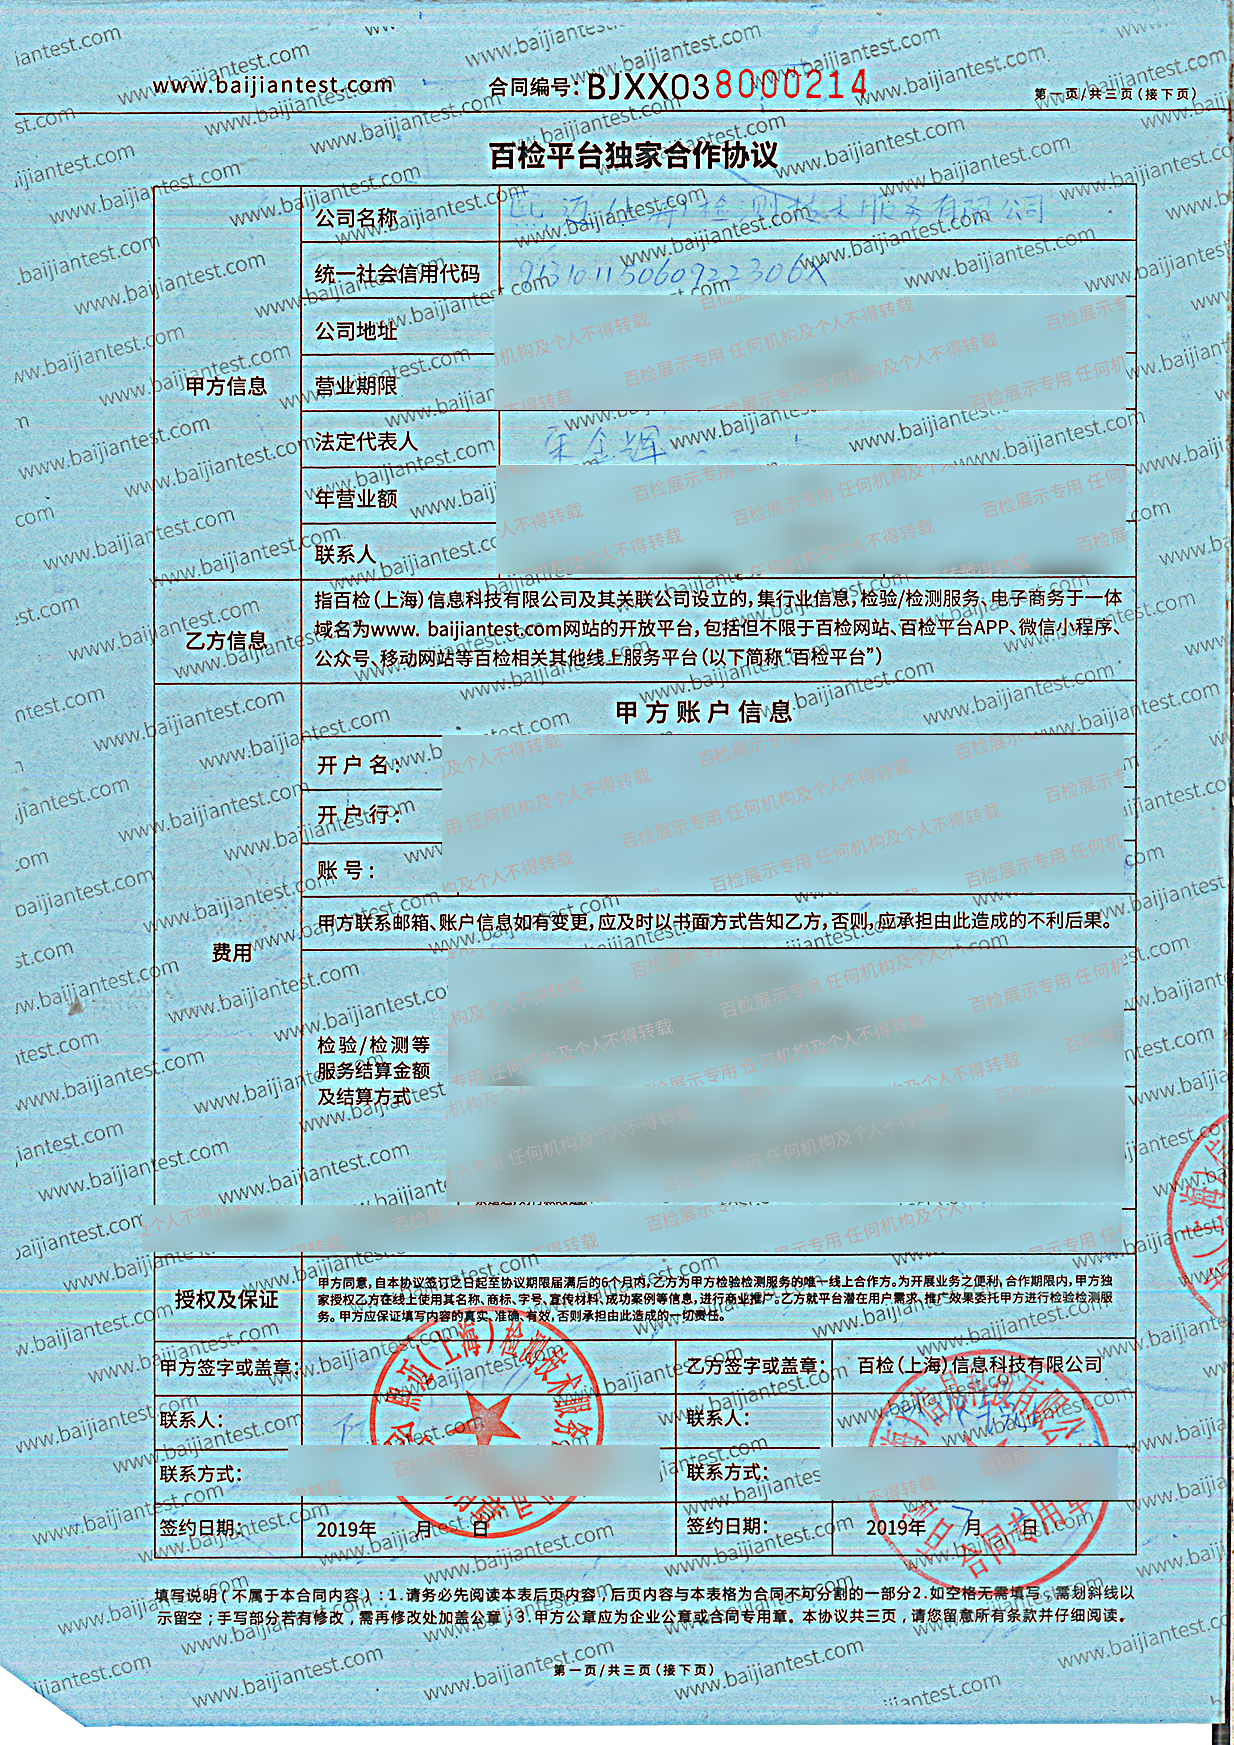 熙迈（上海)检测技术服务有限公司